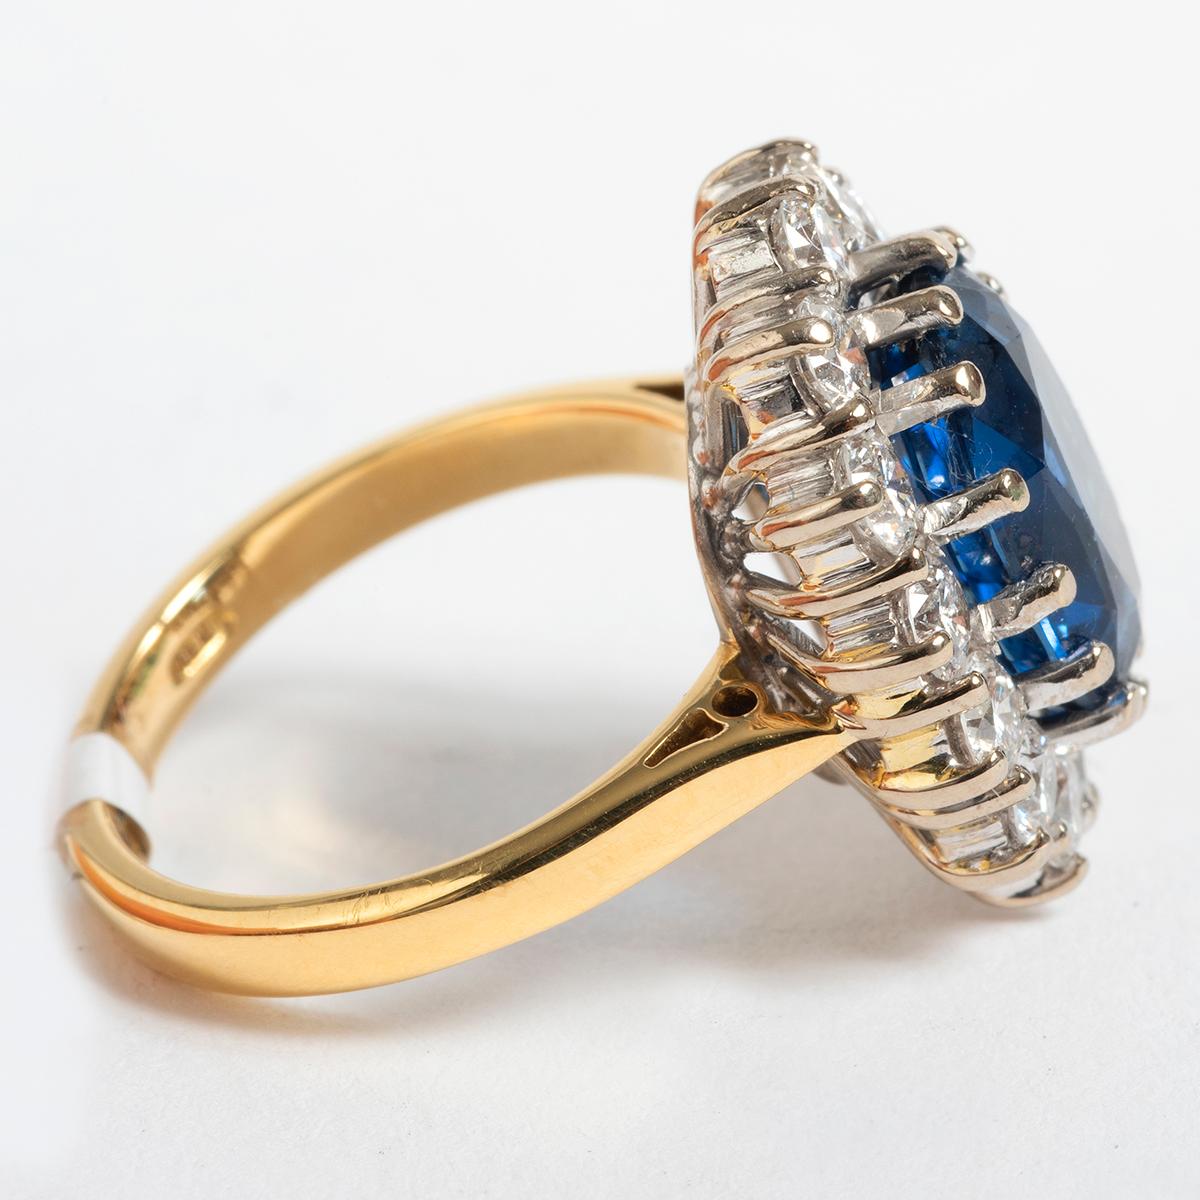 Dieser schöne und beeindruckende Vintage-Ring mit Saphiren und Diamanten ist auf die Zeit um 1900 datiert. Dieser Ring aus 18 Karat Gelbgold wird in UK Größe K / US Größe 5,25 geliefert. Saphir wiegt est 4,65ct und Diamanten est 1,25ct, ein